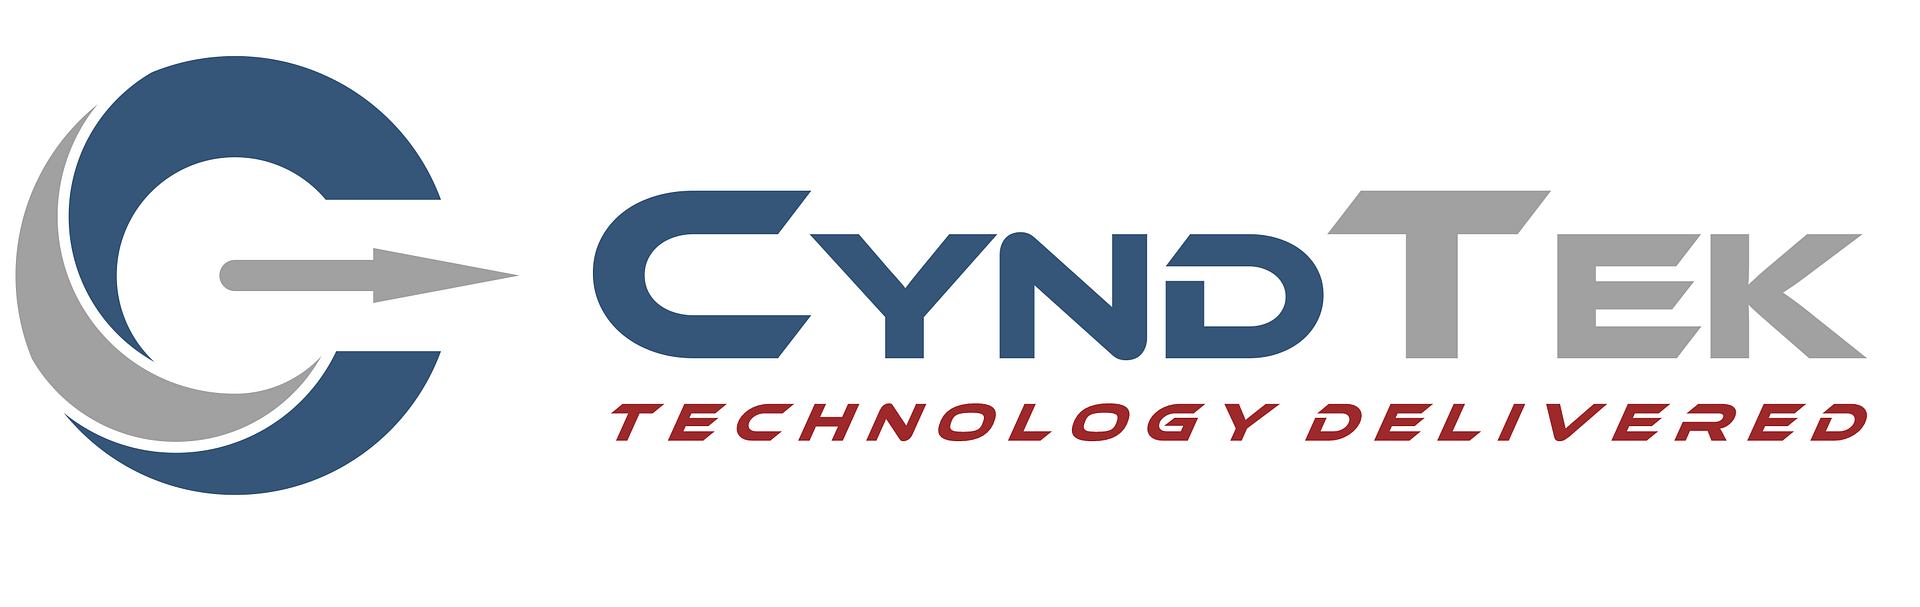 Cyndtek logo image